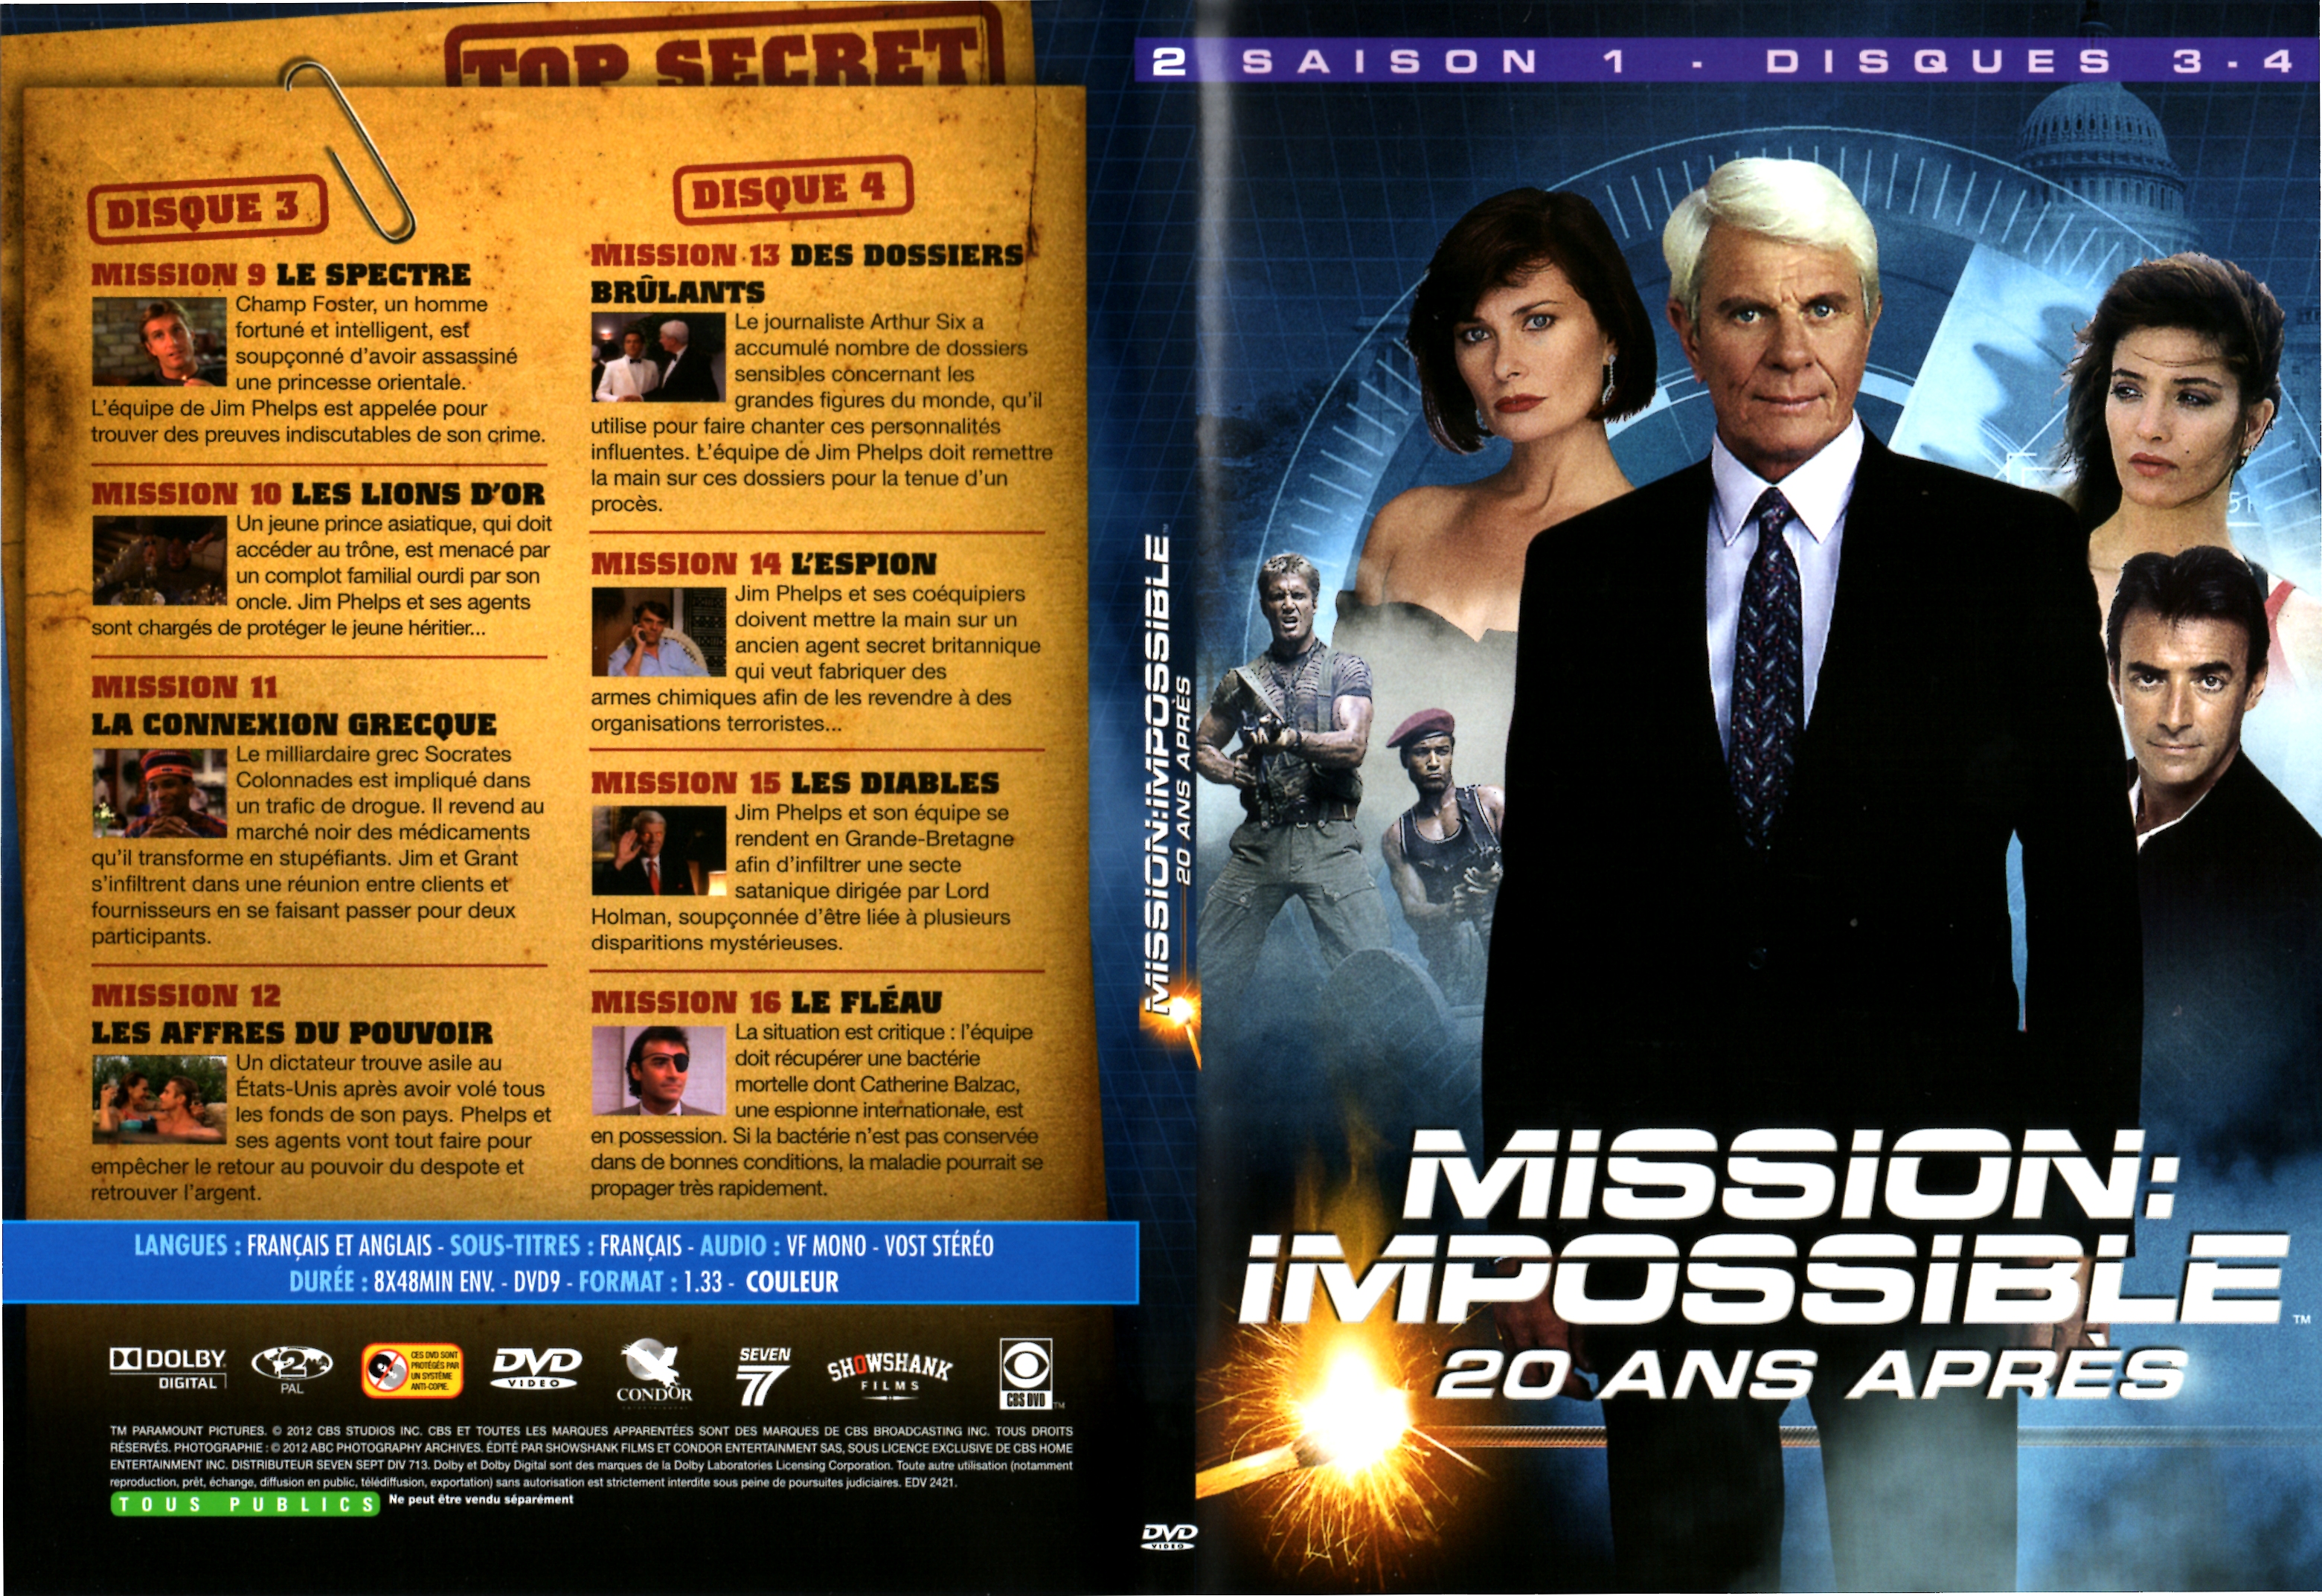 Jaquette DVD Mission impossible 20 ans aprs Saison 1 DVD 2